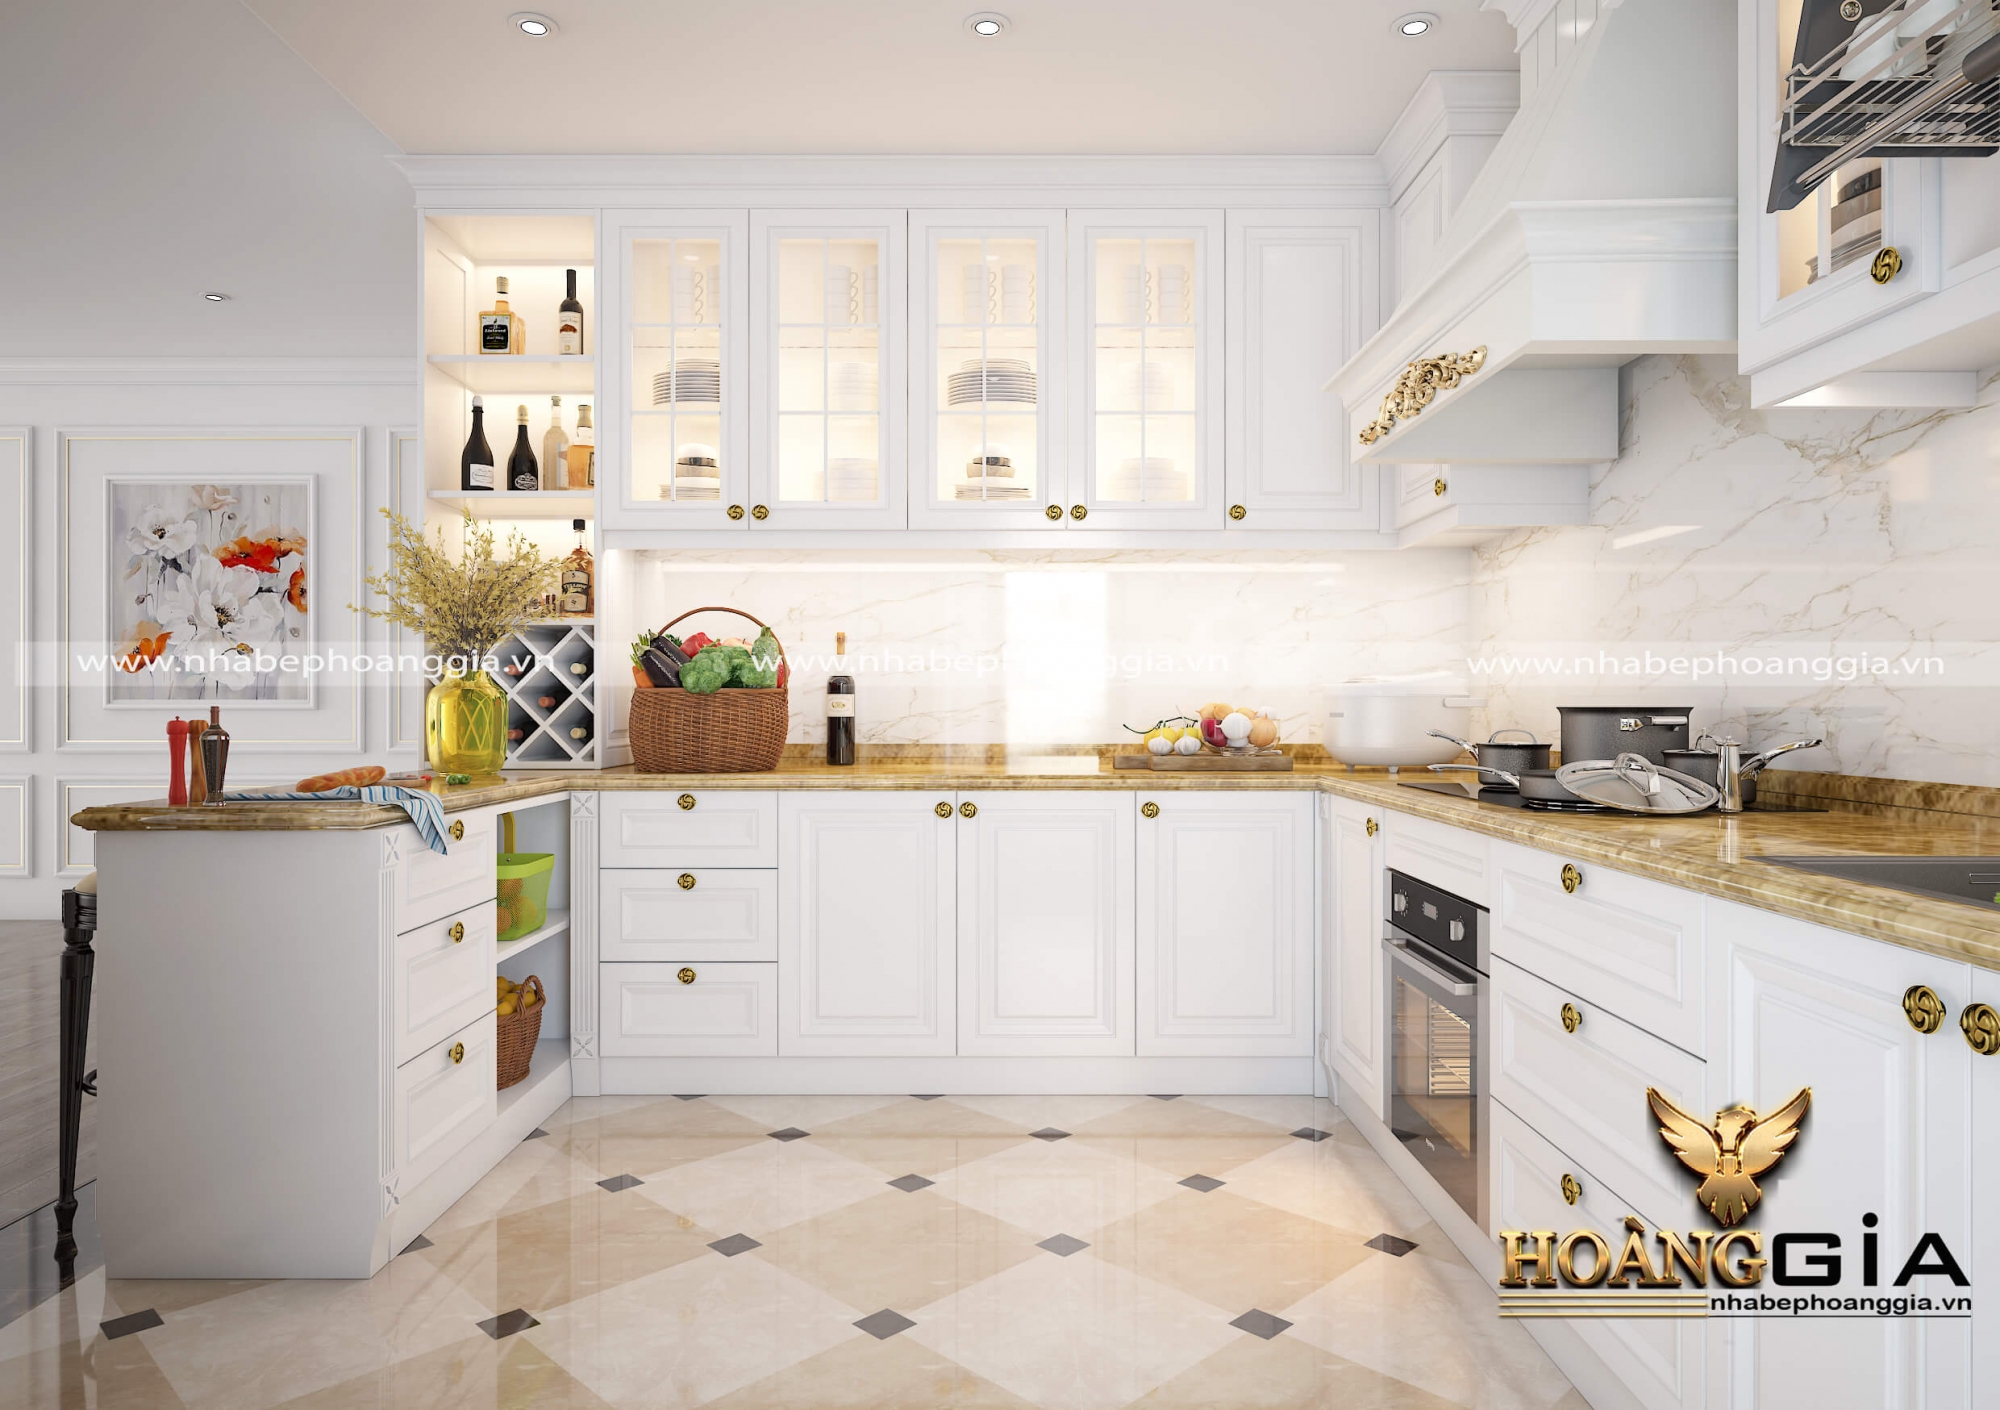 Mẫu tủ bếp đẹp sơn trắng thanh lịch cho nhà chung cư cao cấp